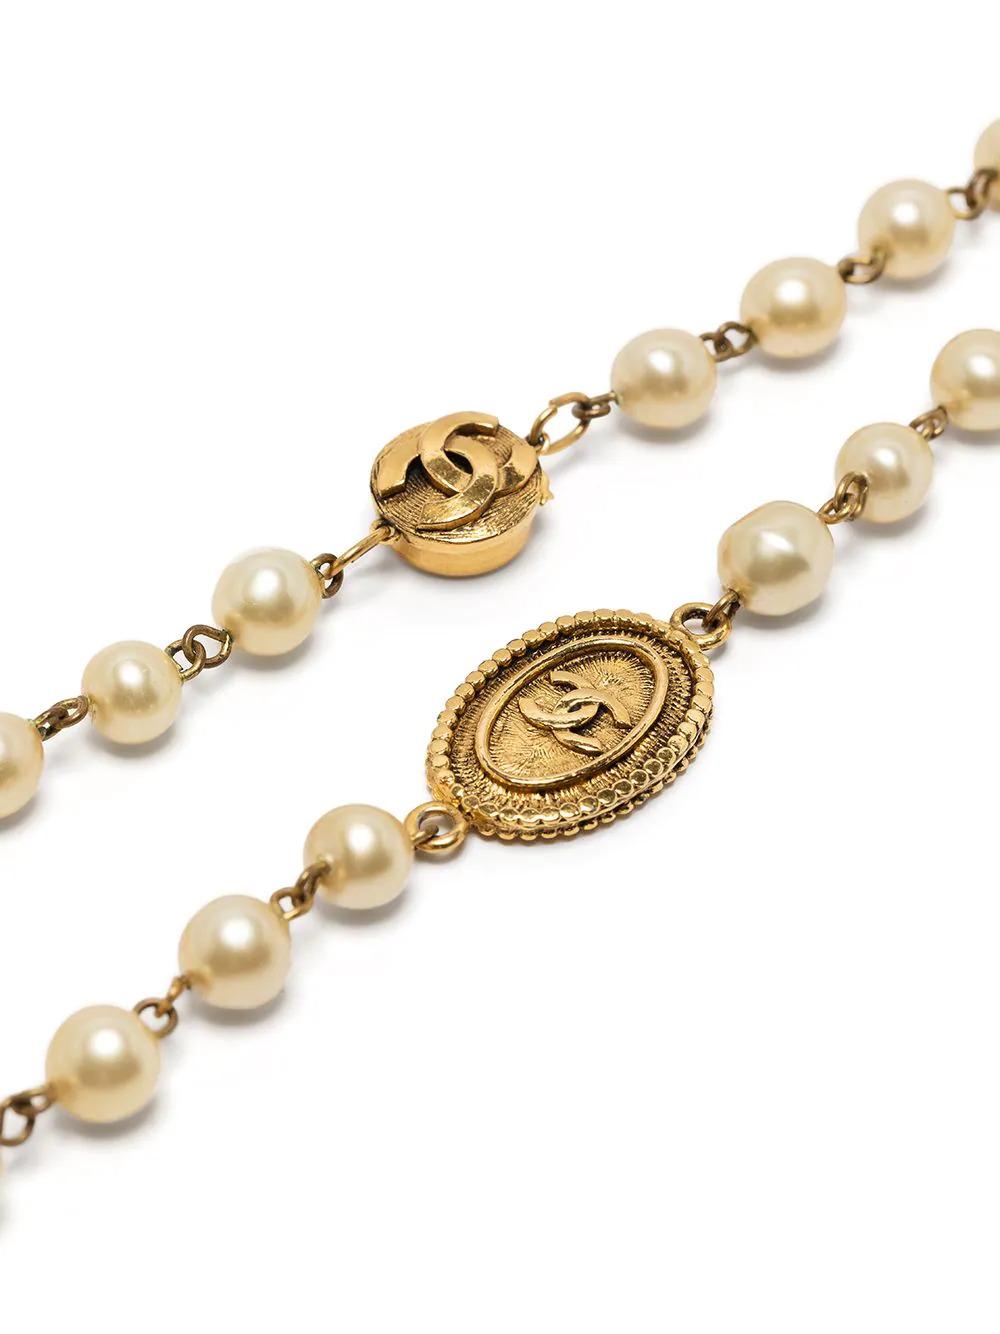 Diese elegante, gebrauchte Halskette von Chanel aus antikgoldfarbenem Metall ist ein einzigartiges Stück, das jedem Outfit einen Hauch von klassischer Raffinesse verleiht. Die großformatigen Kunstperlenverzierungen und die ineinandergreifenden